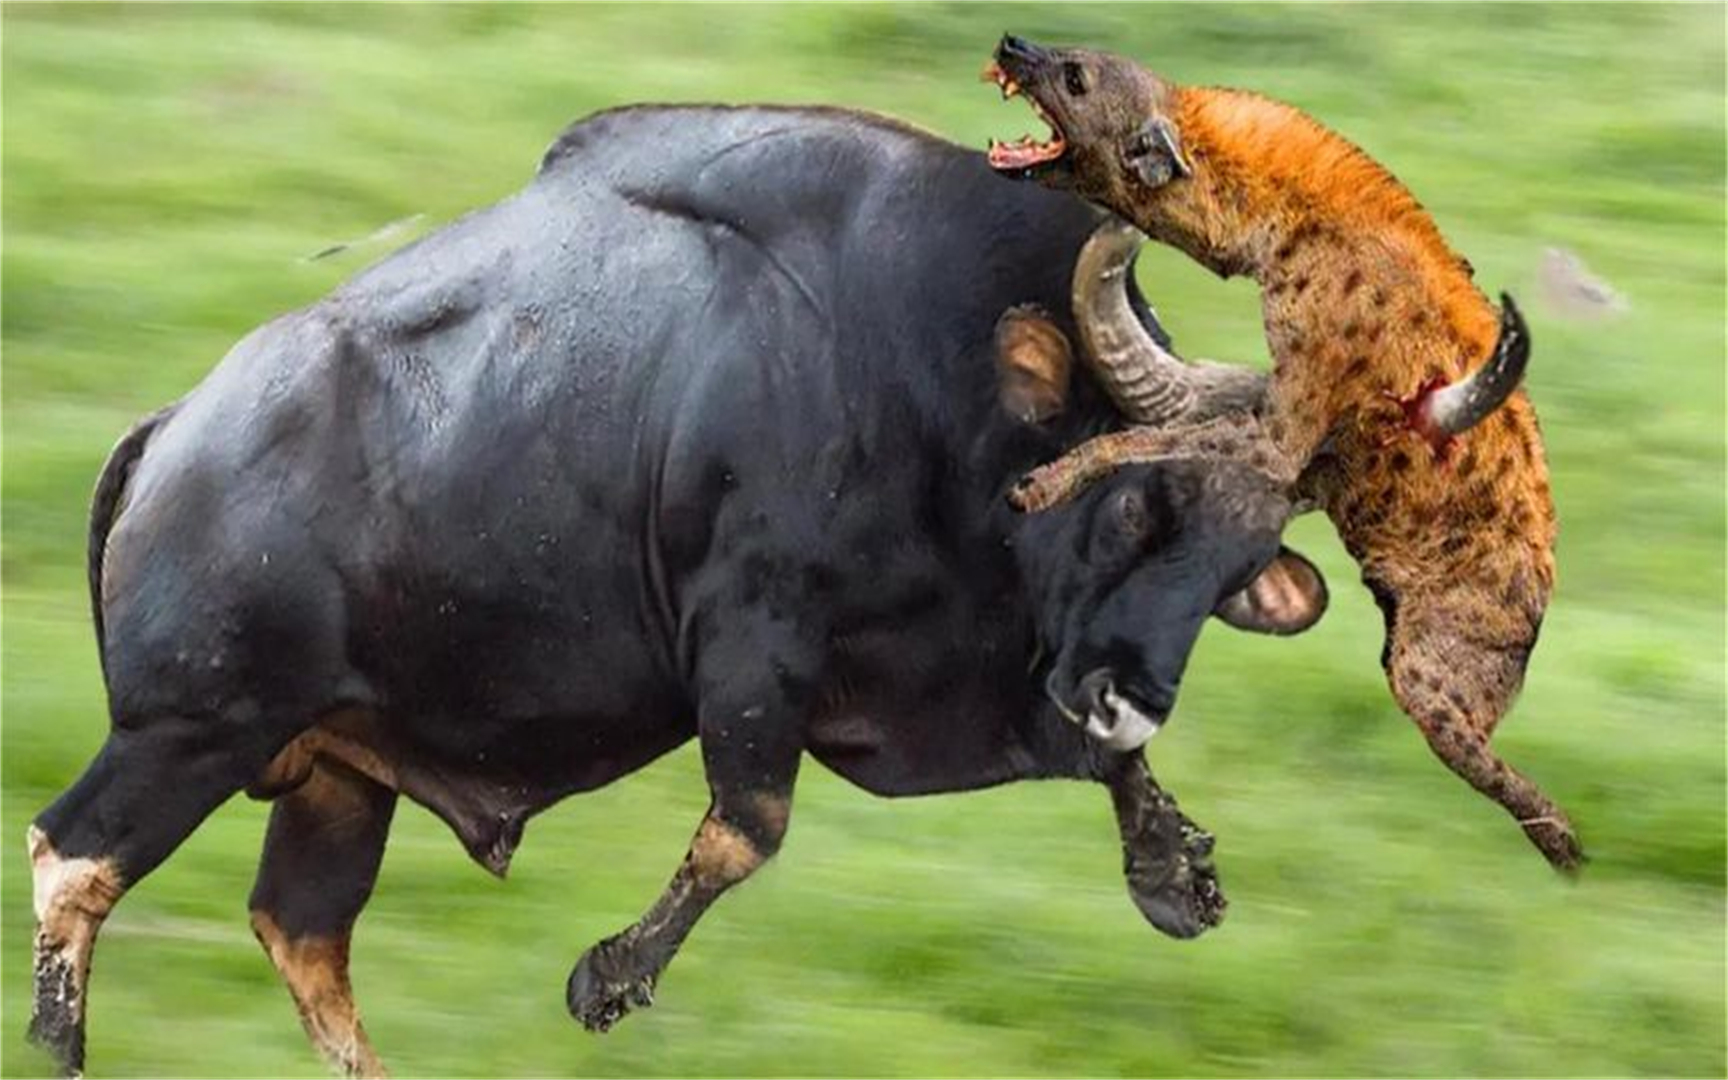 好斗的水牛撞上鬣狗,拯救小牛,水牛vs鬣狗,野狗!